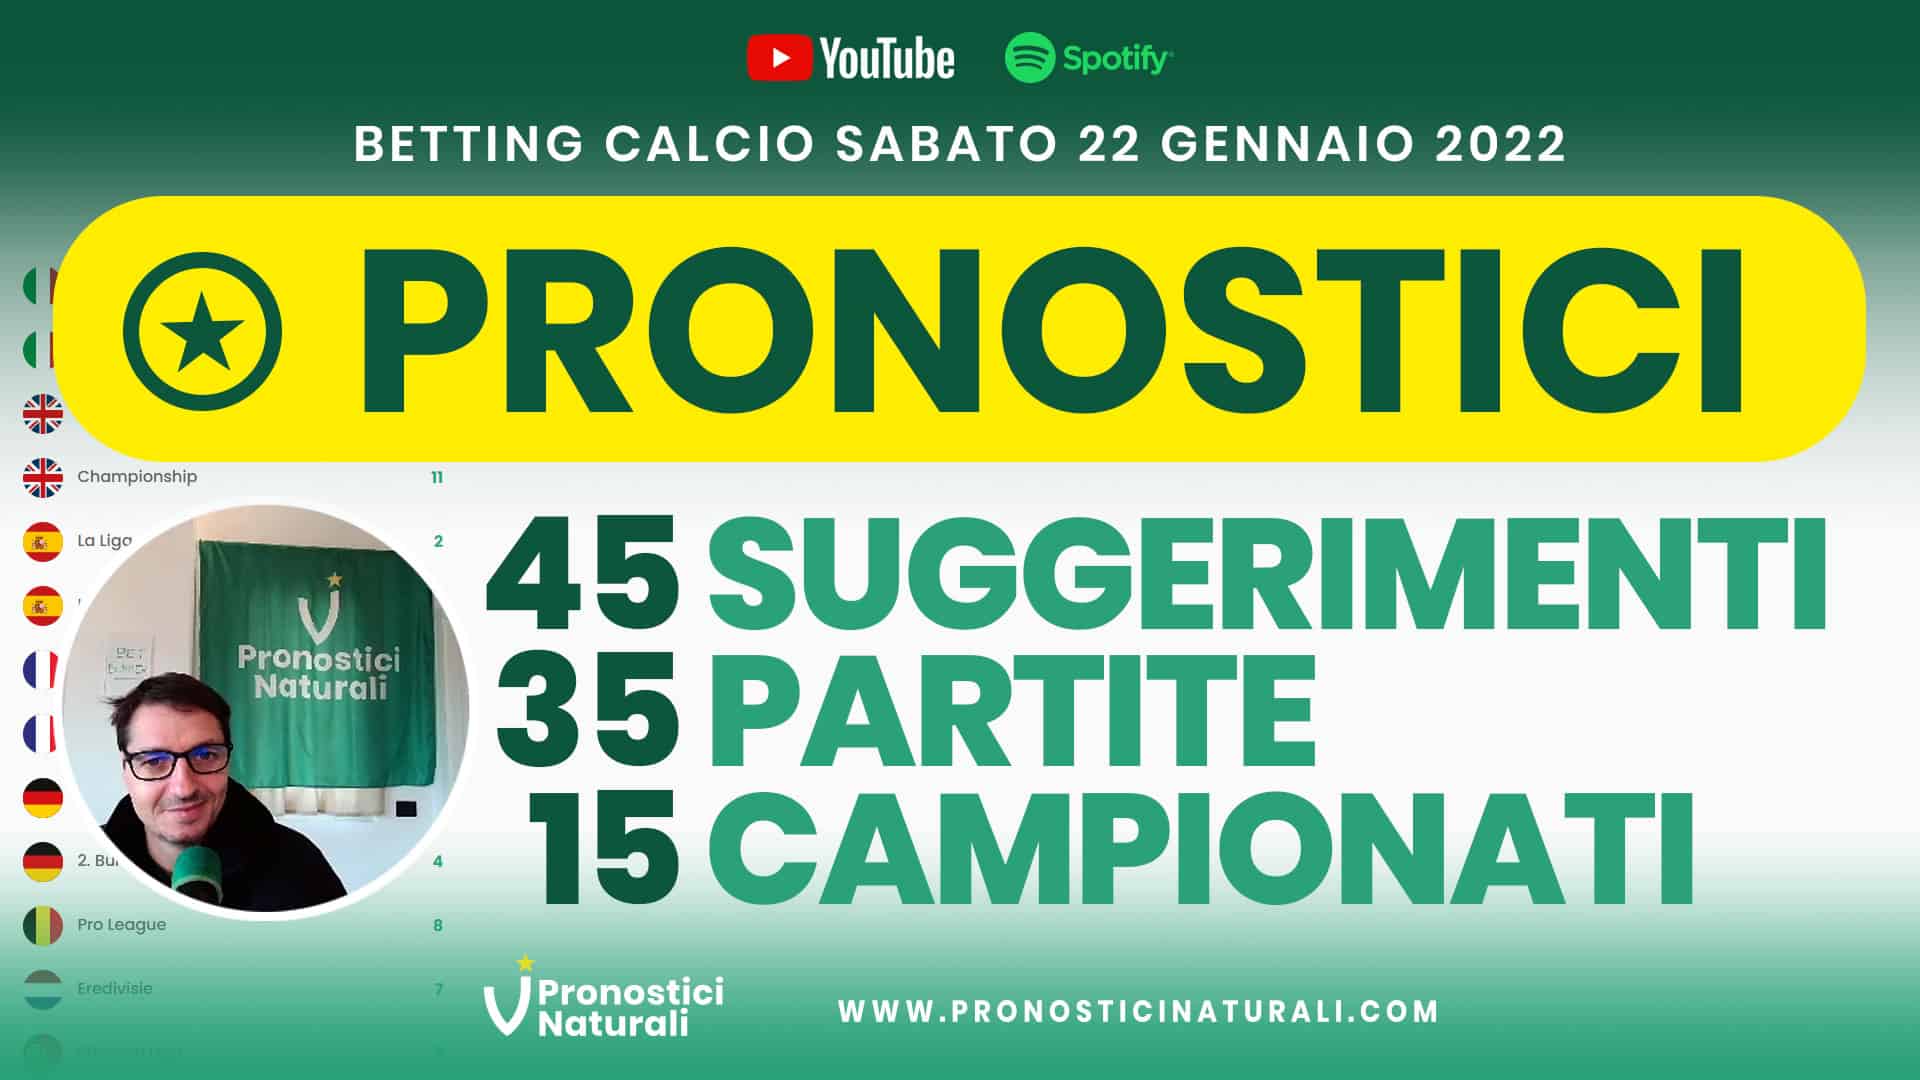 Pronostici Naturali Video Analisi Scommesse Betting Calcio Analisi Pre Partite Sabato 22 Gennaio 2022